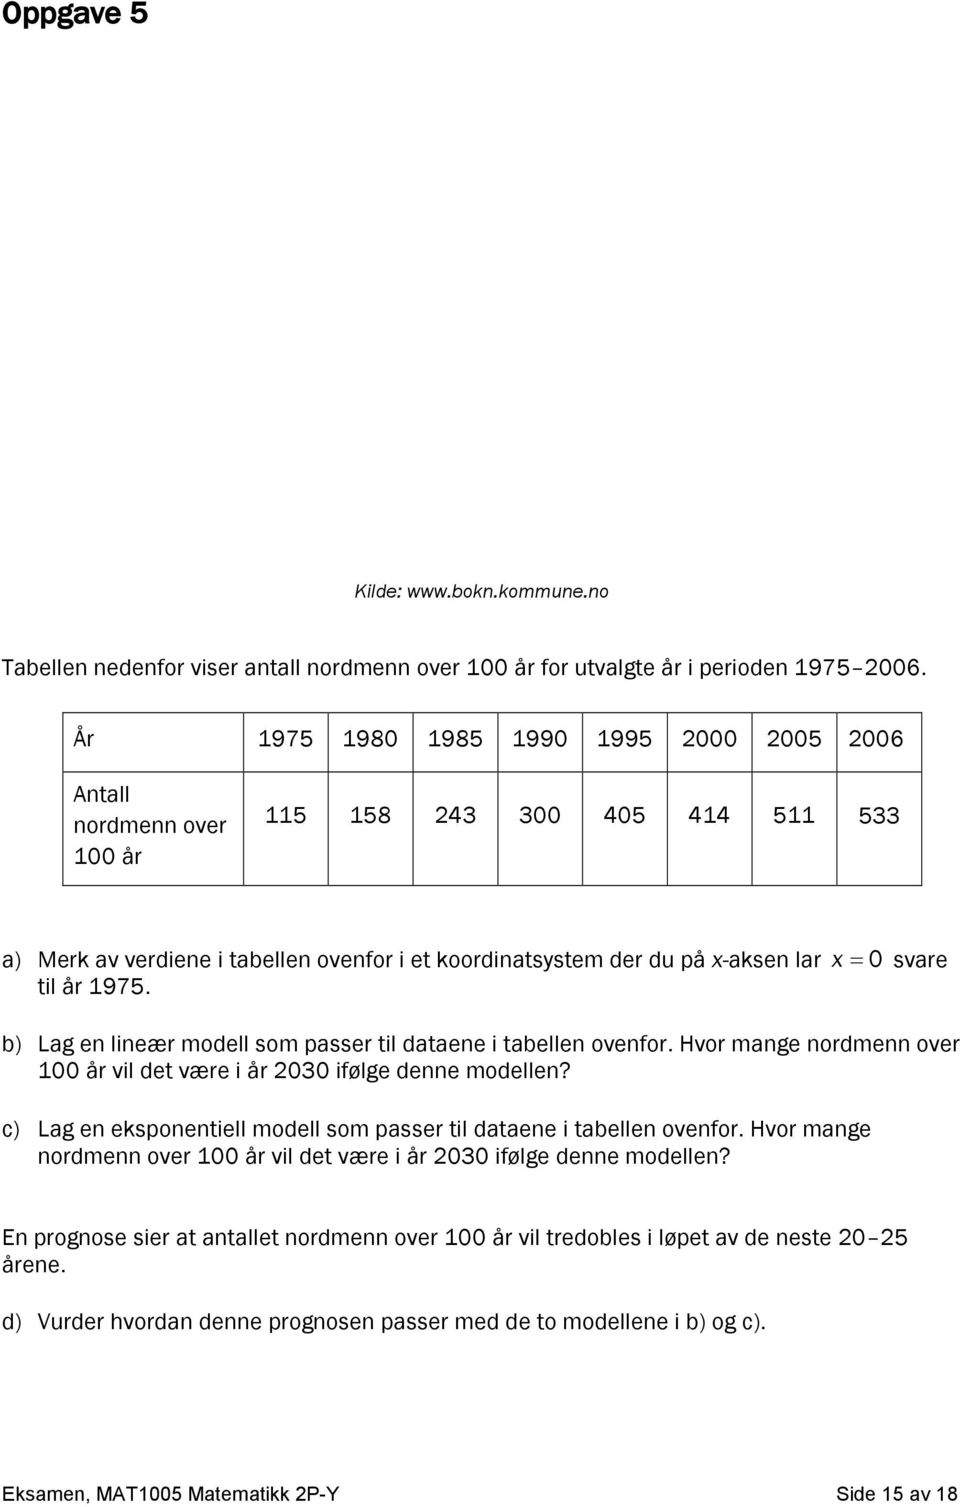 1975. svare b) Lag en lineær modell som passer til dataene i tabellen ovenfor. Hvor mange nordmenn over 100 år vil det være i år 2030 ifølge denne modellen?